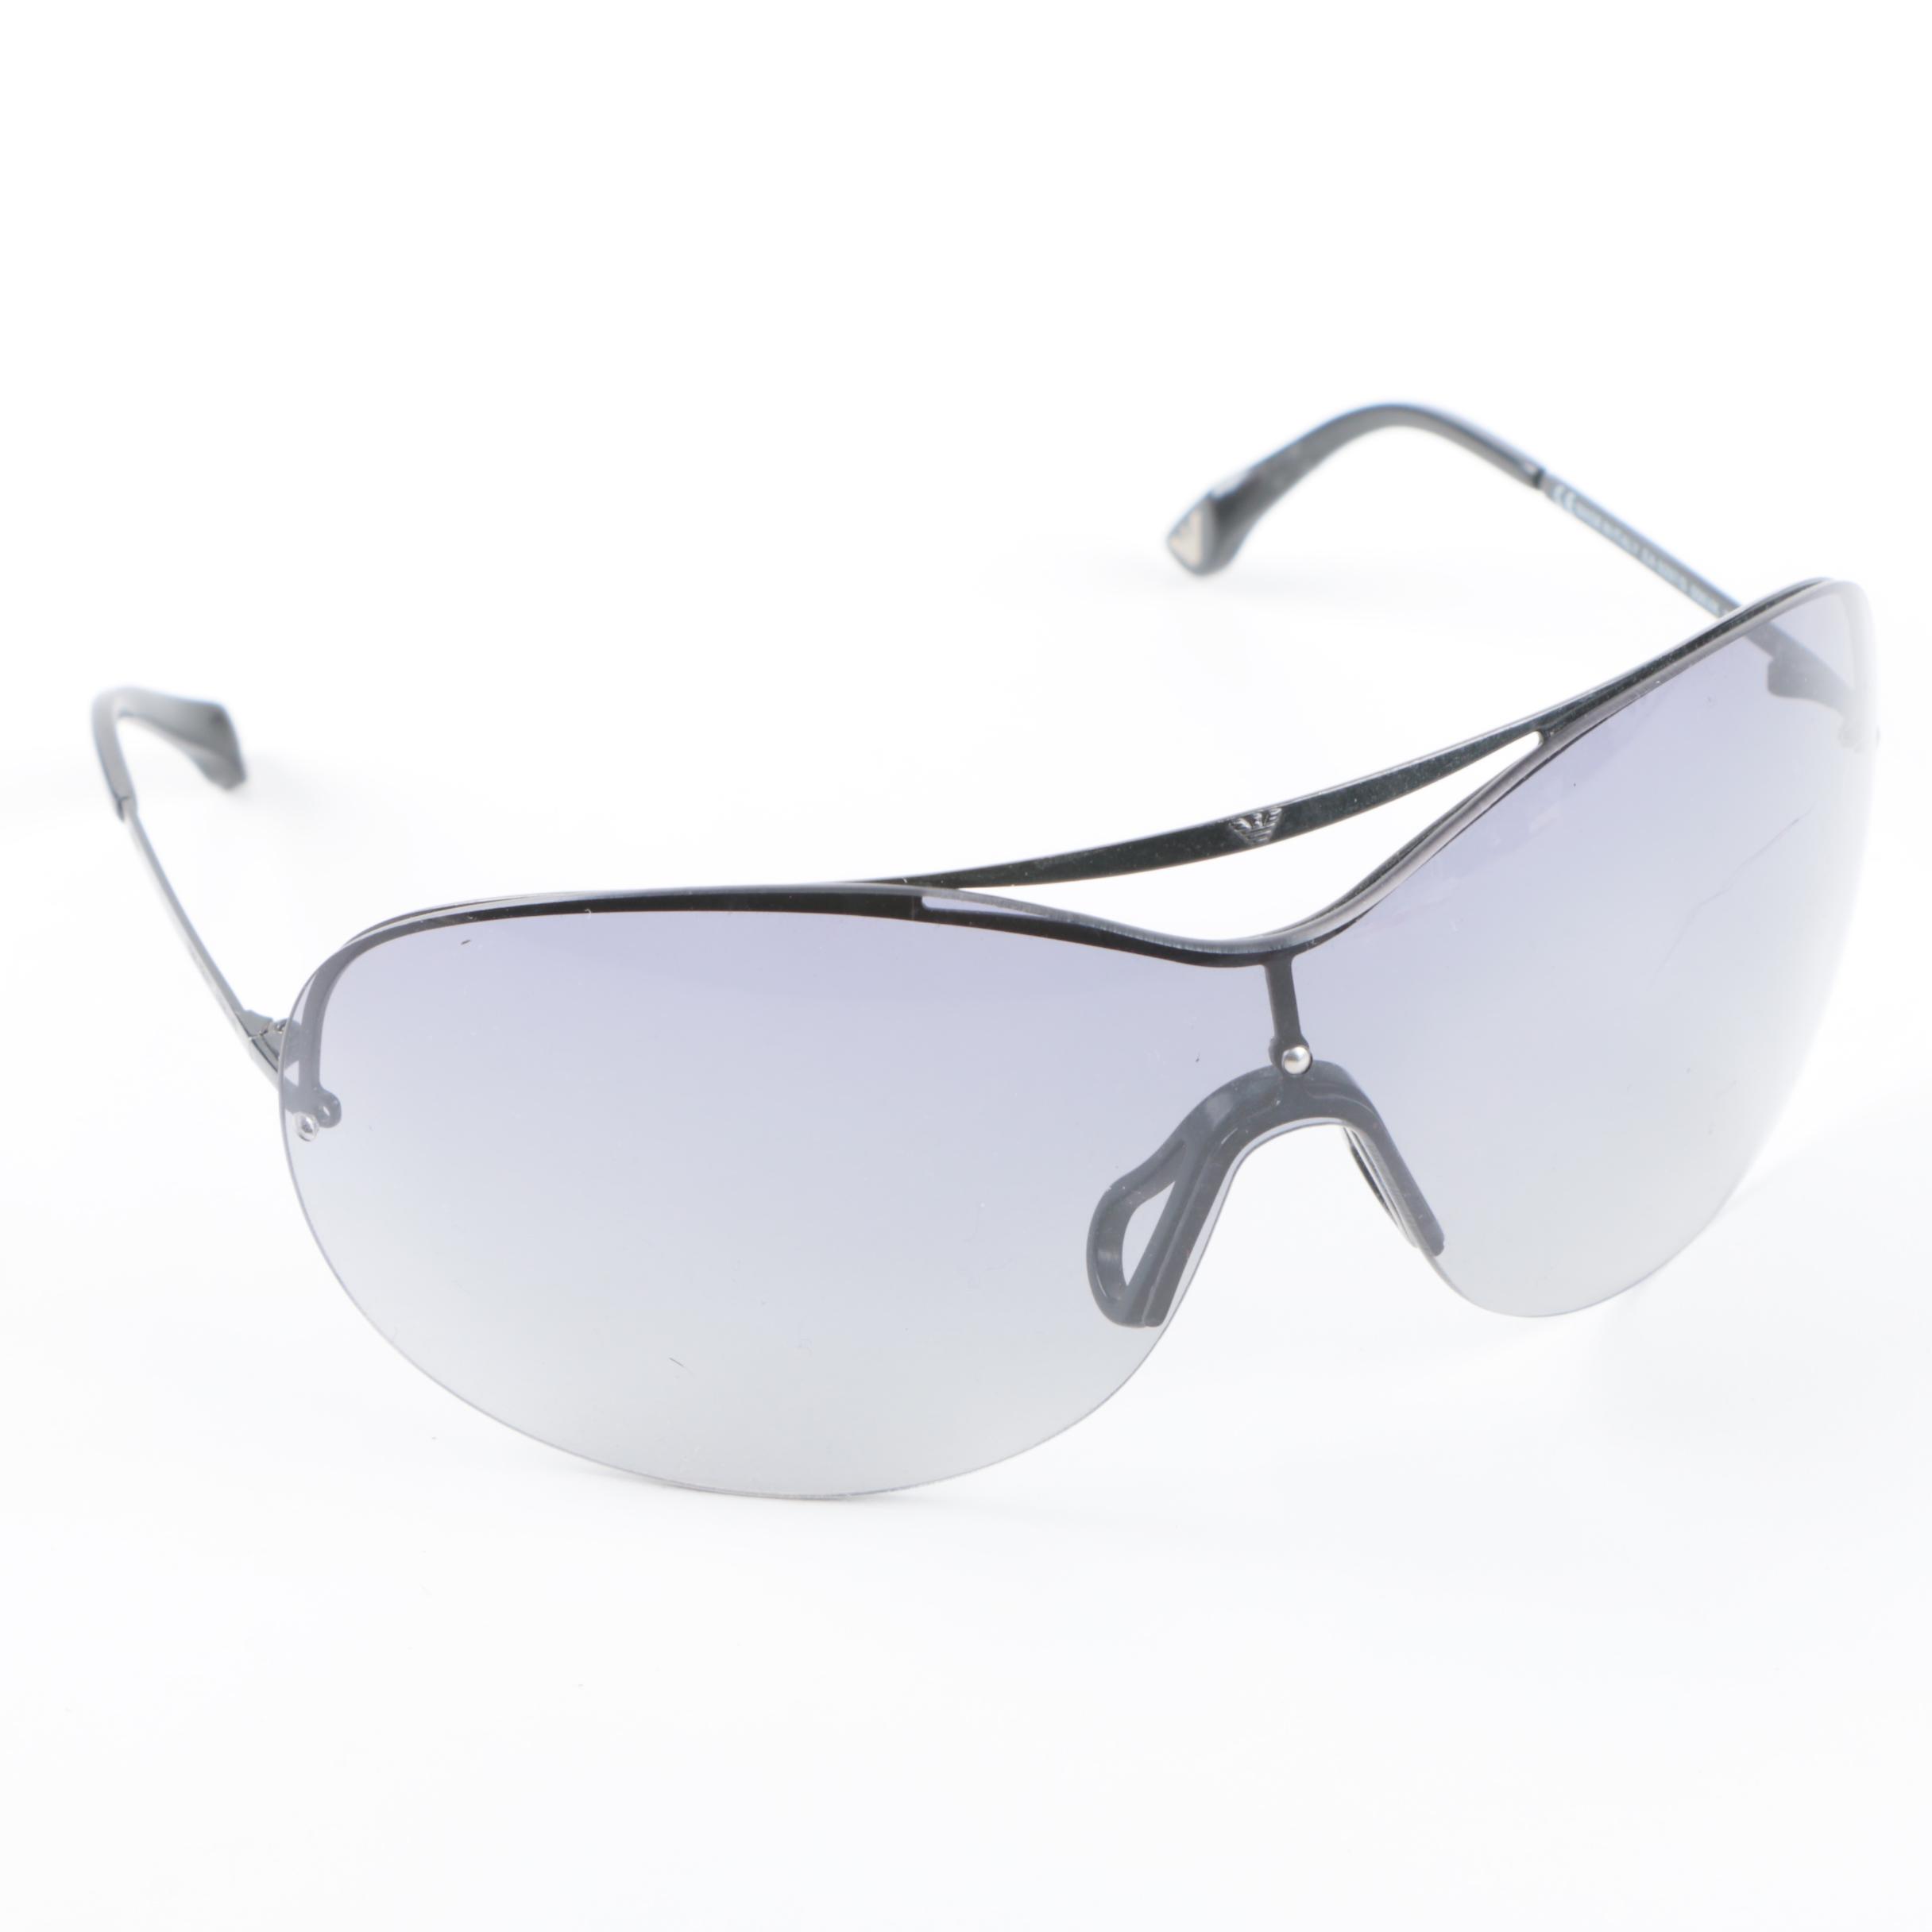 armani shield sunglasses